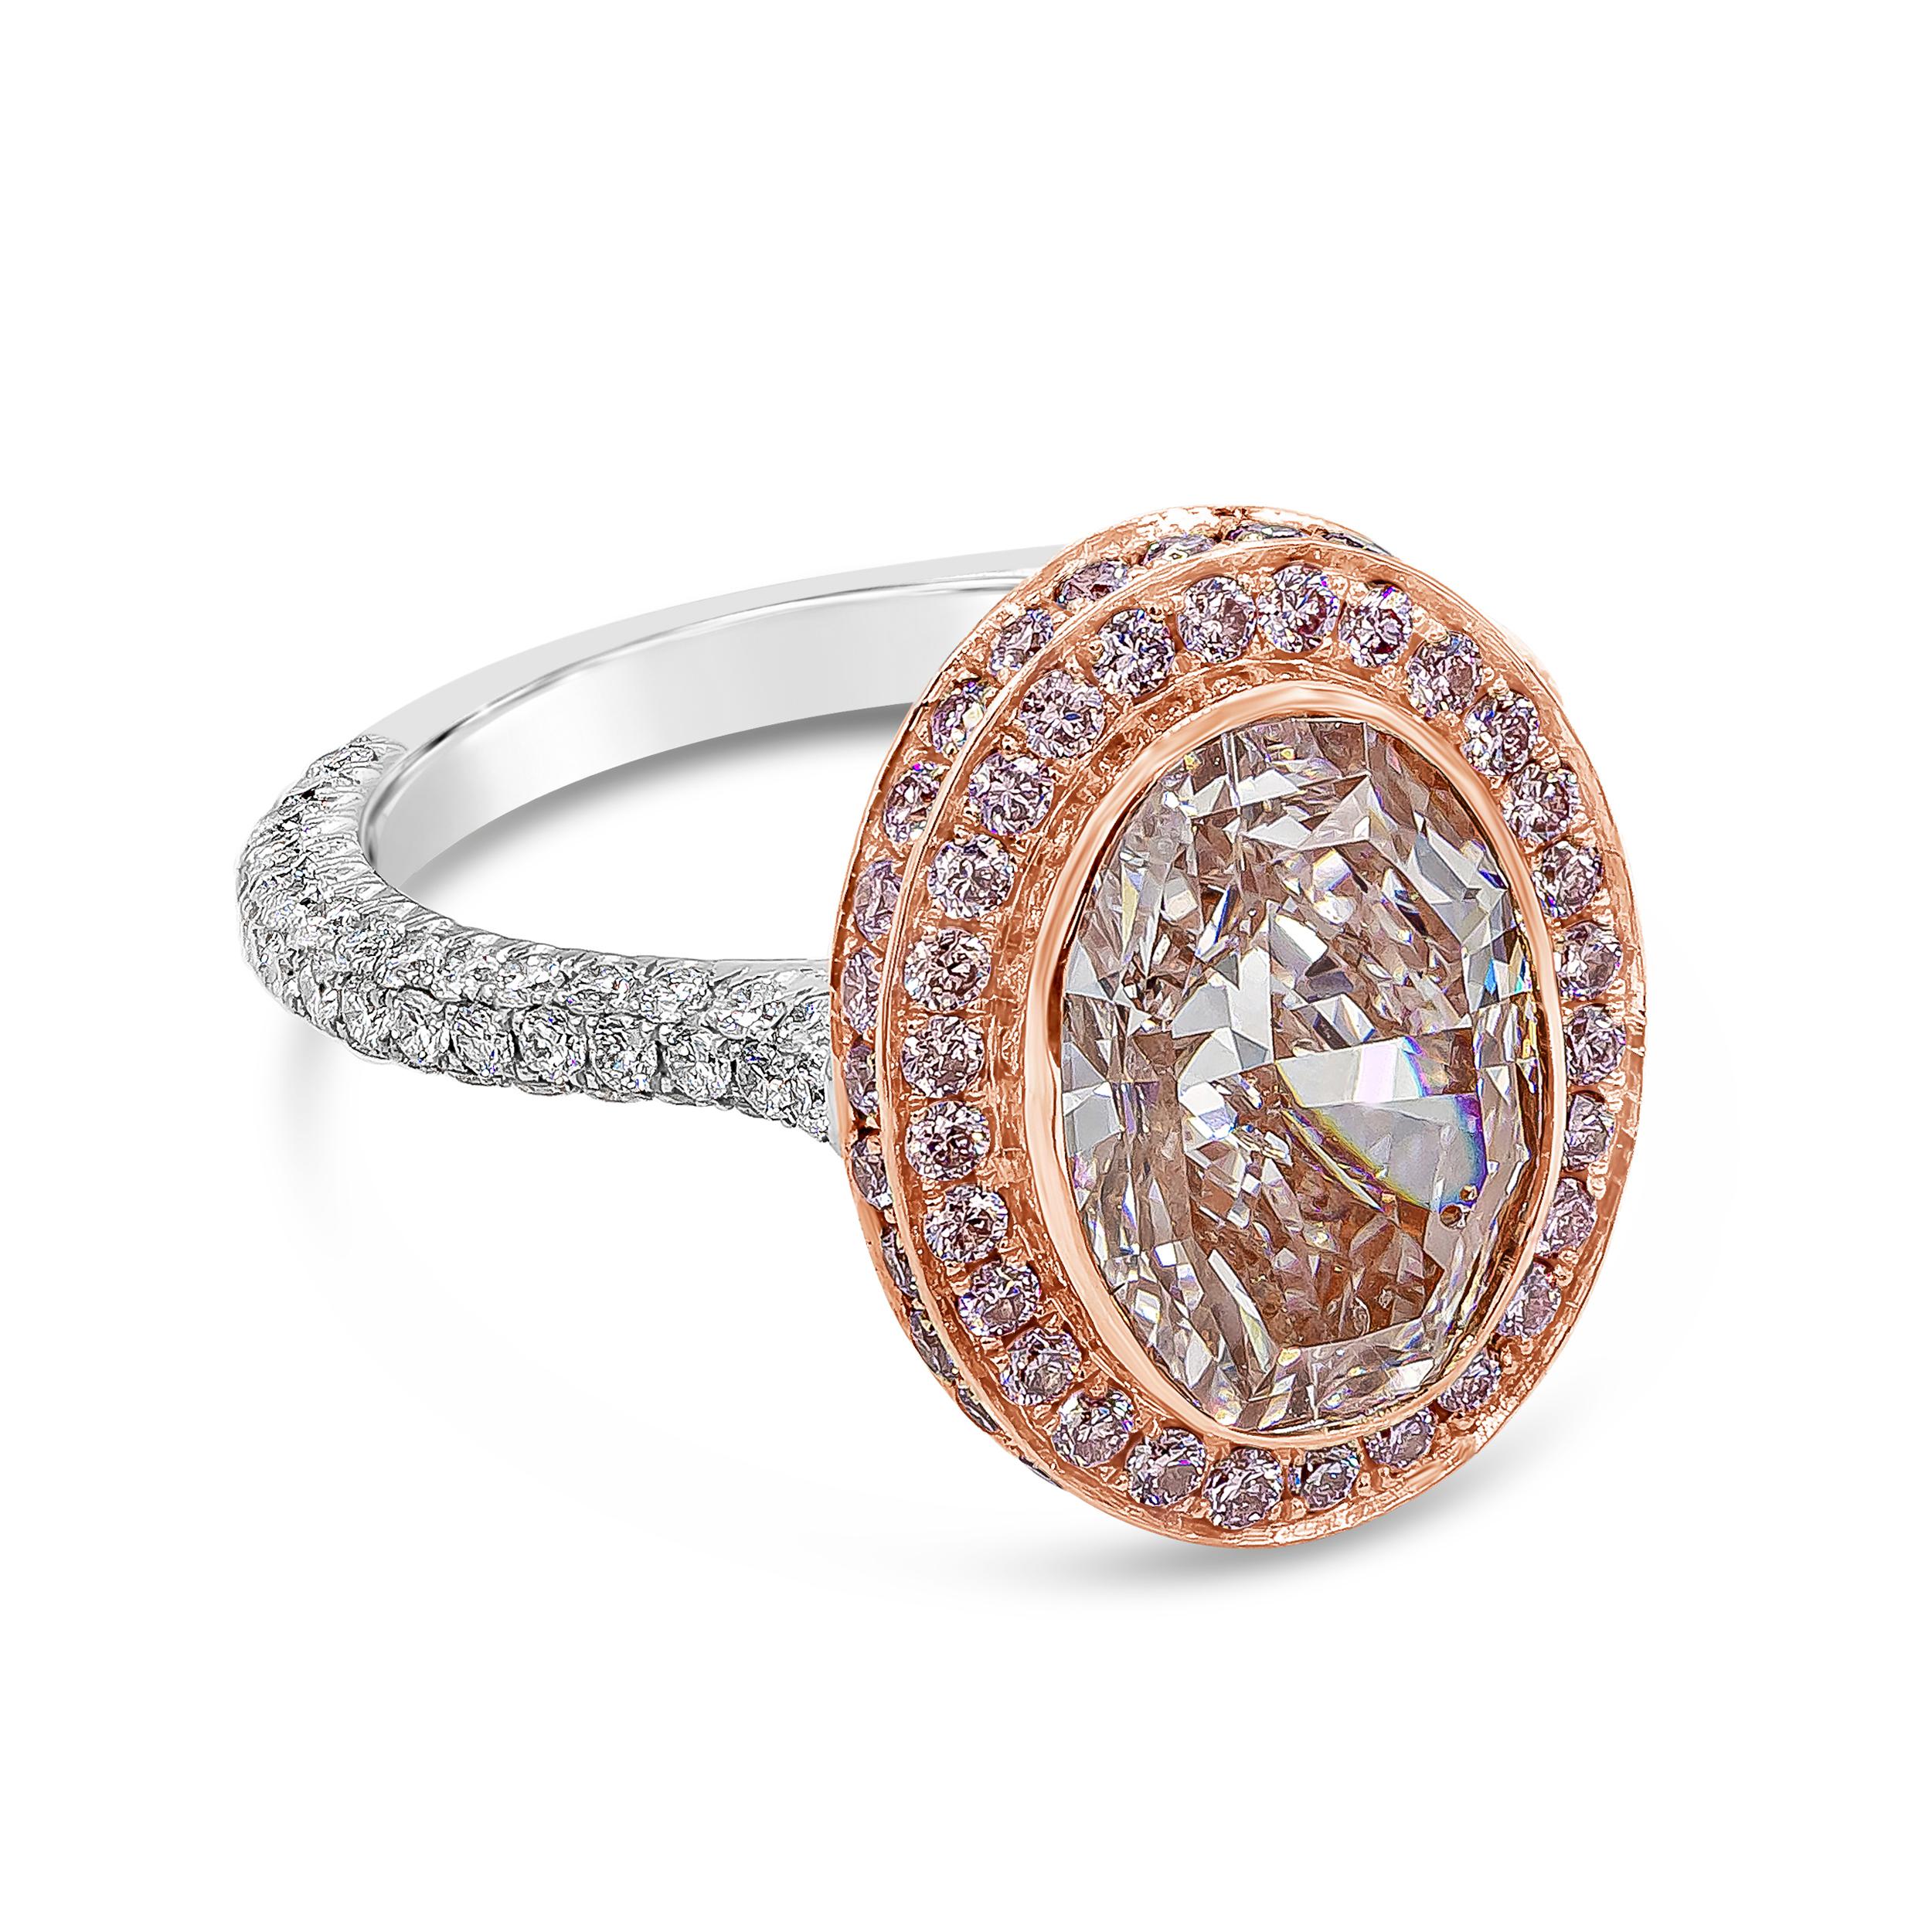 Une magnifique bague de fiançailles en diamant rose présentant un diamant rose ovale de 3,66 carats certifié par le GIA comme étant de couleur rose clair, sans défaut interne de clarté. Autour du diamant central se trouve une rangée de diamants